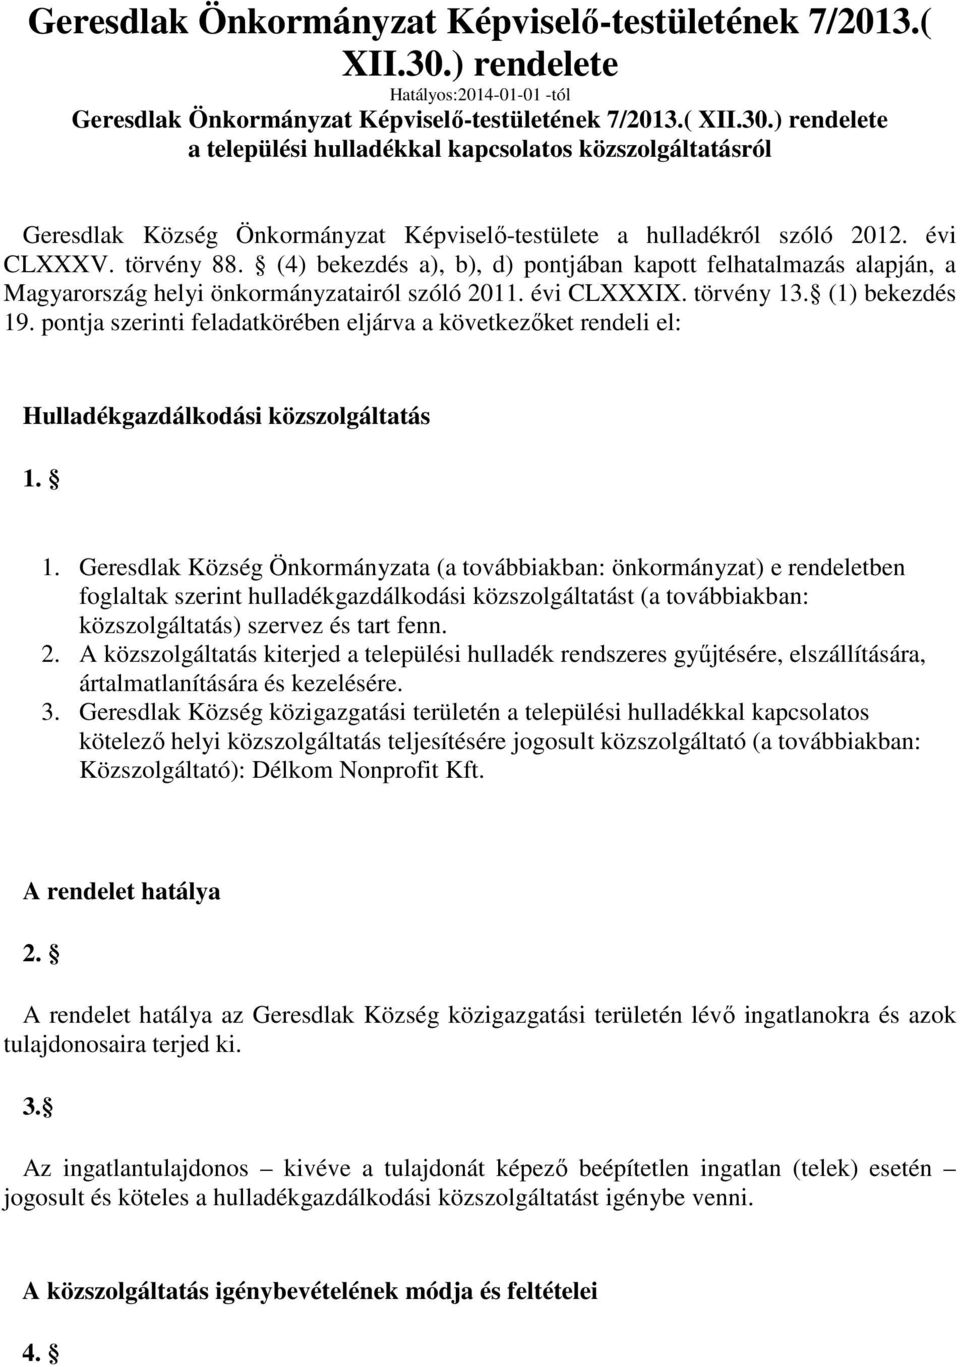 törvény 88. (4) bekezdés a), b), d) pontjában kapott felhatalmazás alapján, a Magyarország helyi önkormányzatairól szóló 2011. évi CLXXXIX. törvény 13. (1) bekezdés 19.